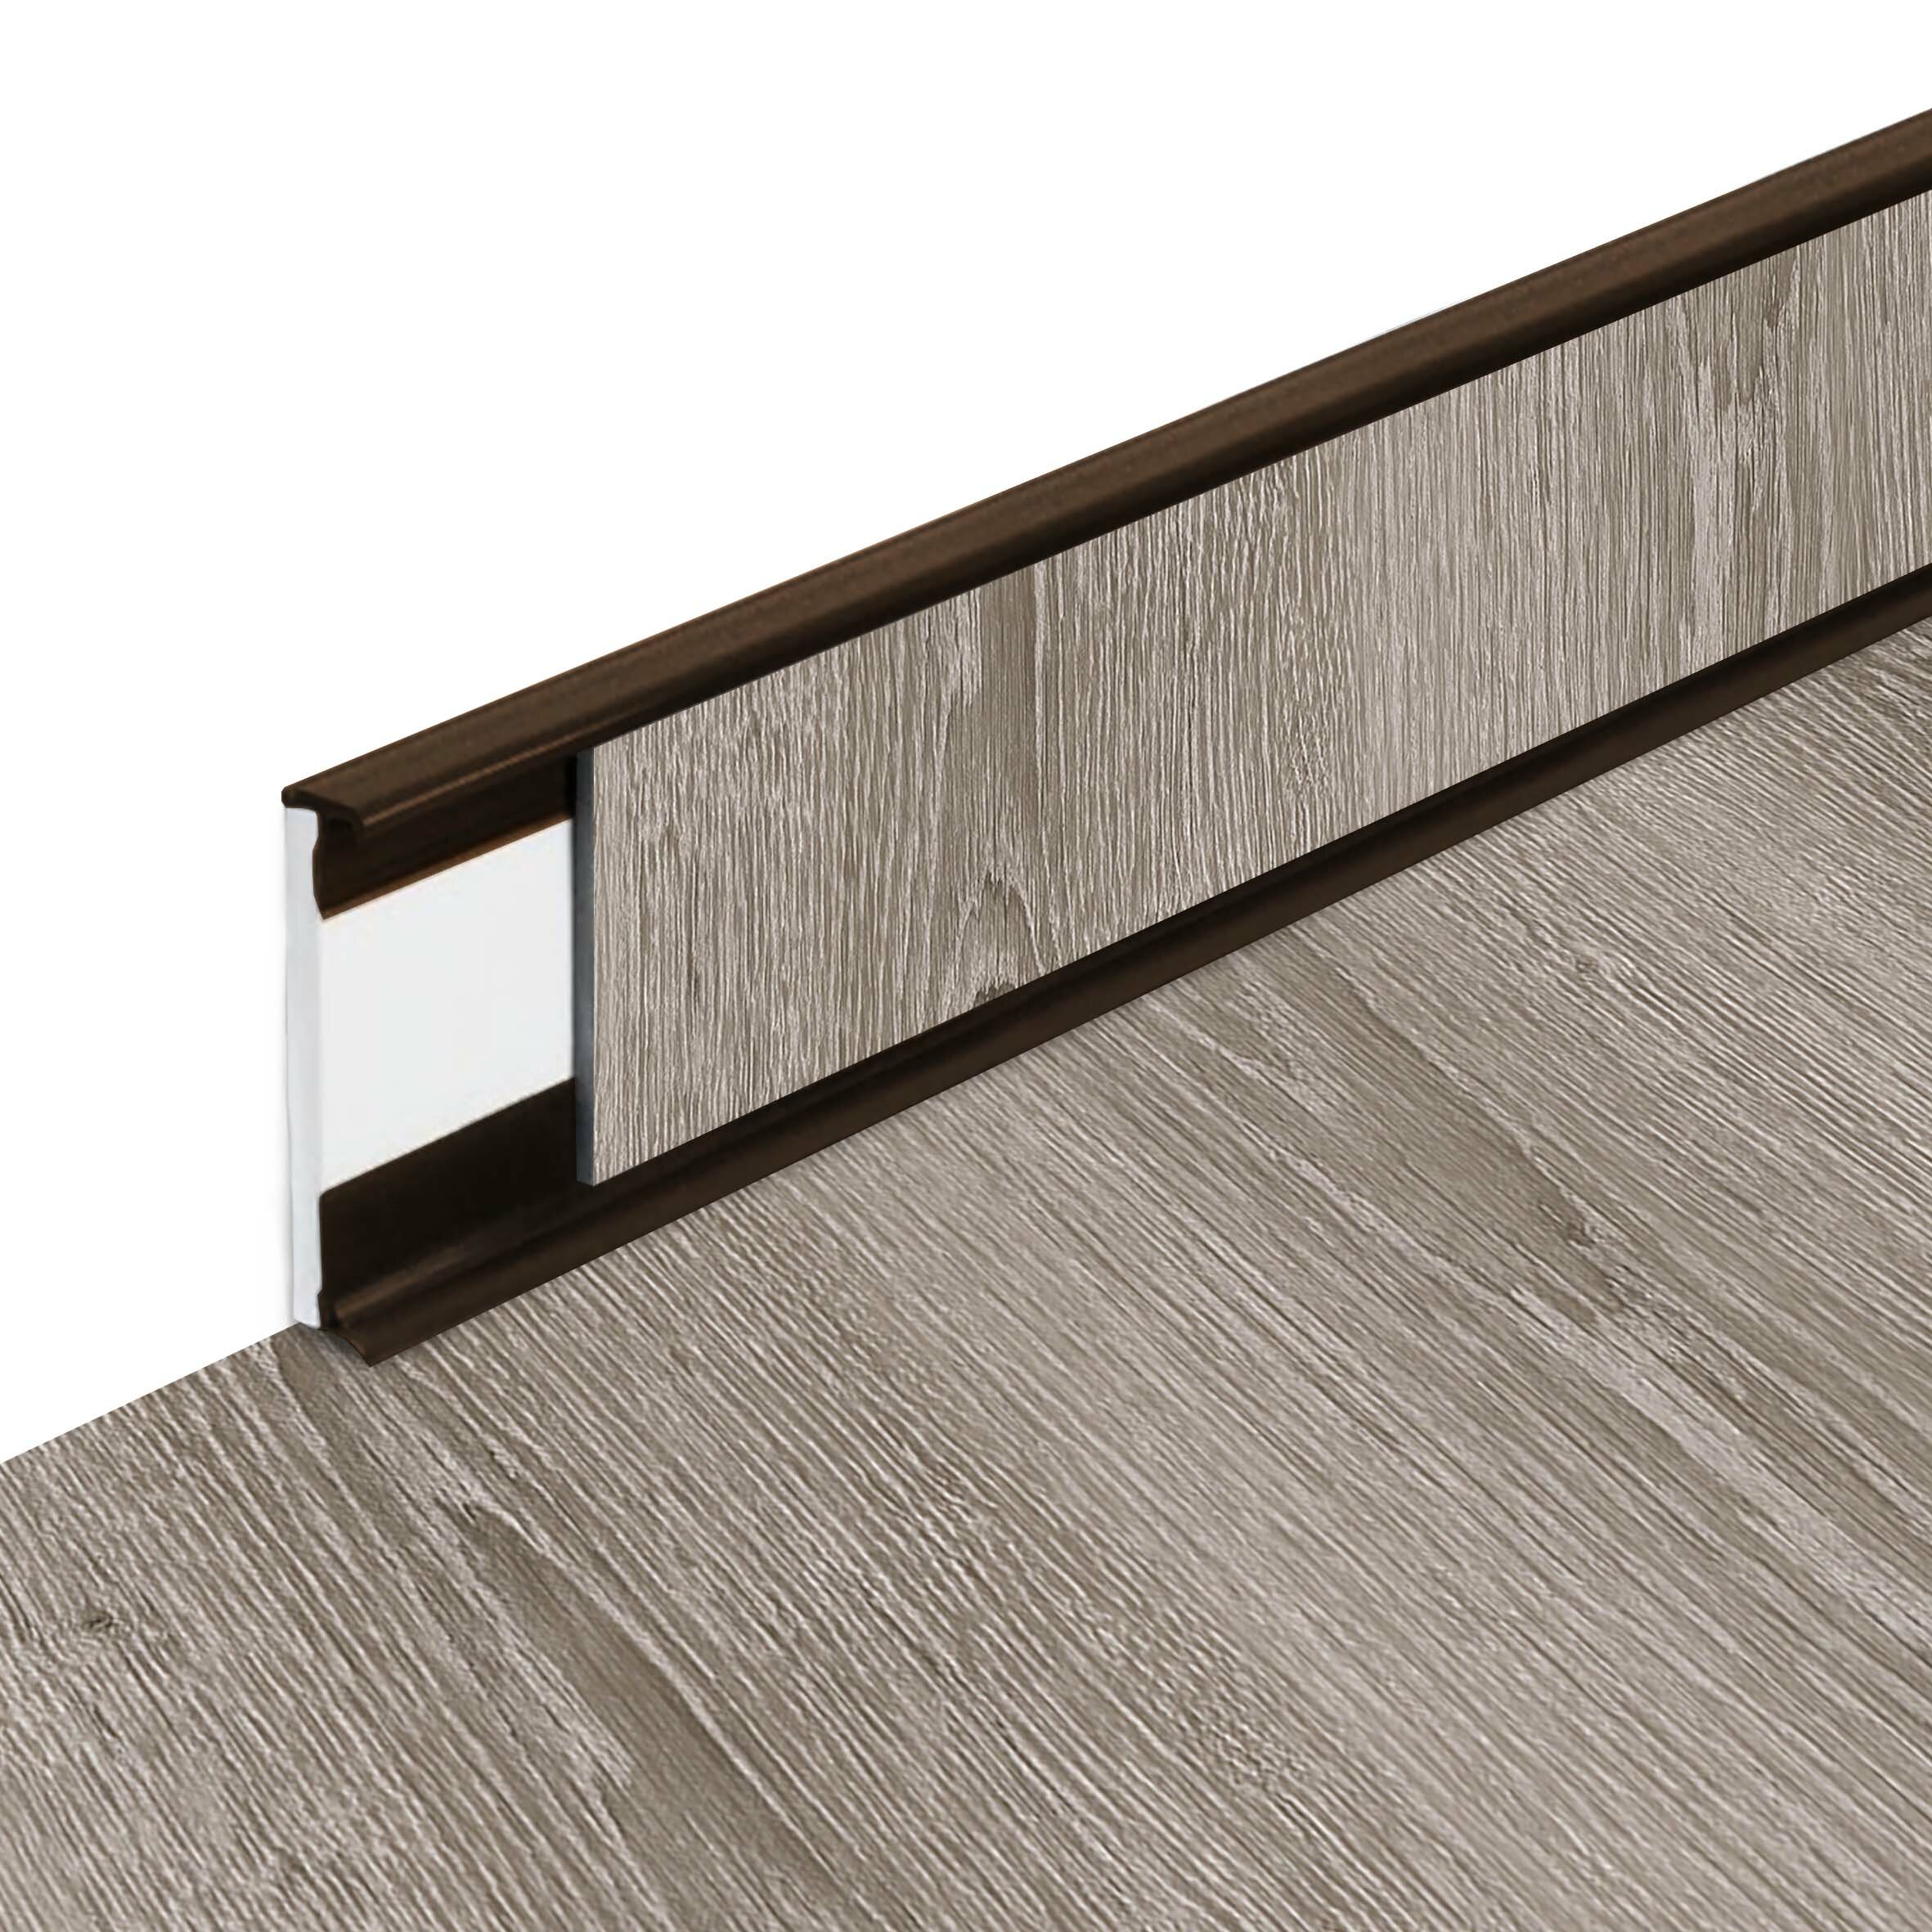 PVC vinylová soklová podlahová lišta Fortelock Business Scandinavian Oak W002 Brown - délka 200 cm, výška 5,8 cm, tloušťka 1,2 cm